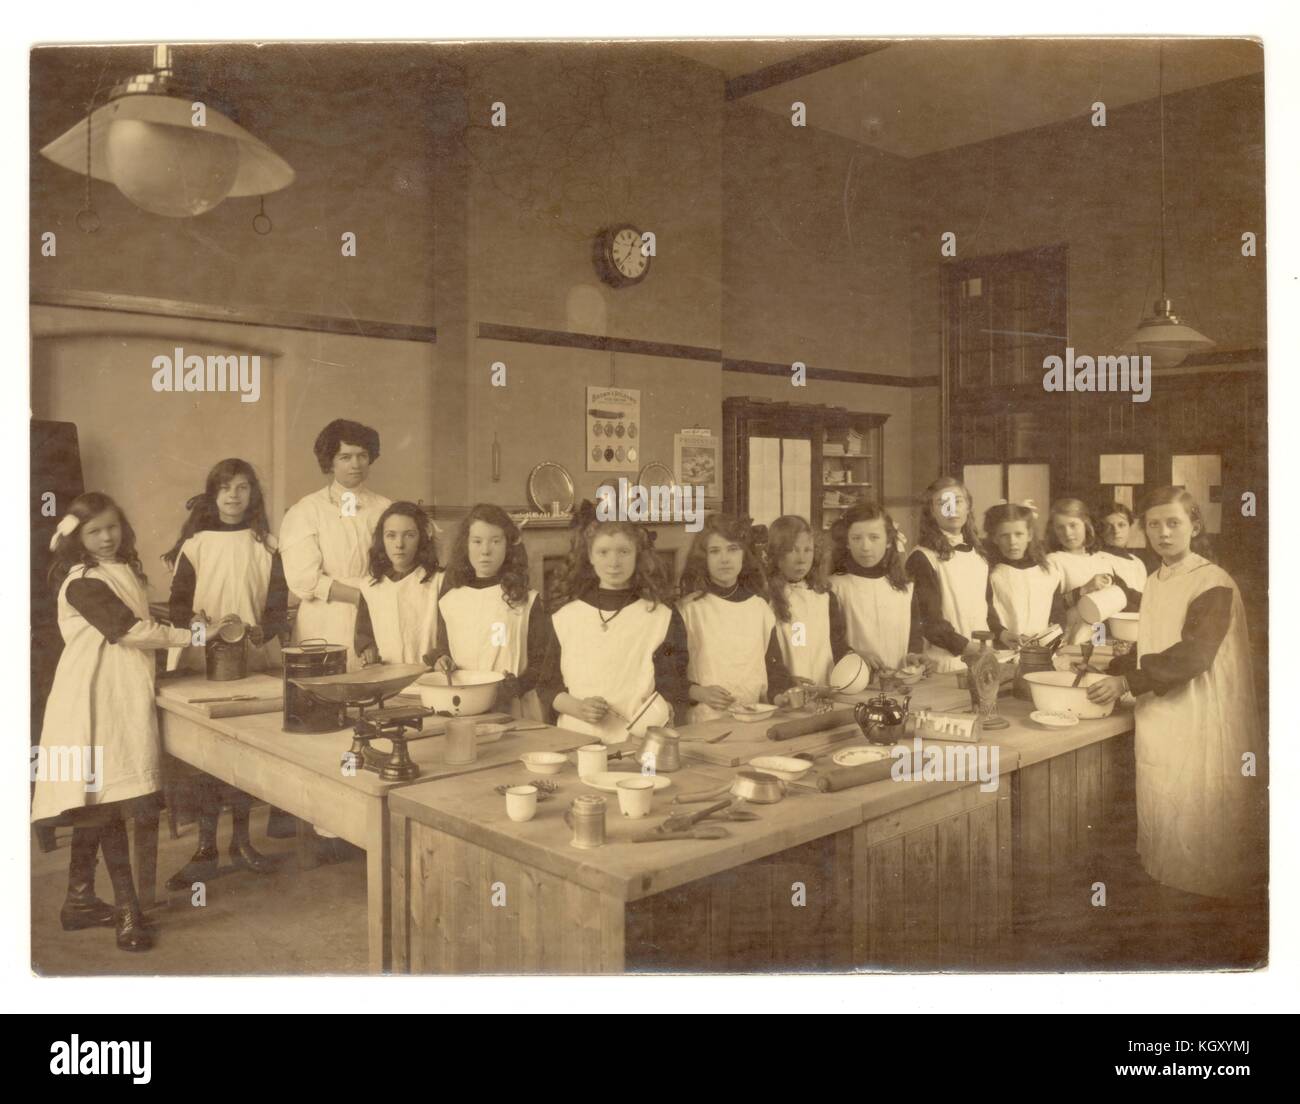 Photographie originale d'Edwardian girls dans une classe de sciences domestiques, de l'apprentissage à l'école de cuisine et pâtisserie cuisine, vers 1910, au Royaume-Uni. Banque D'Images